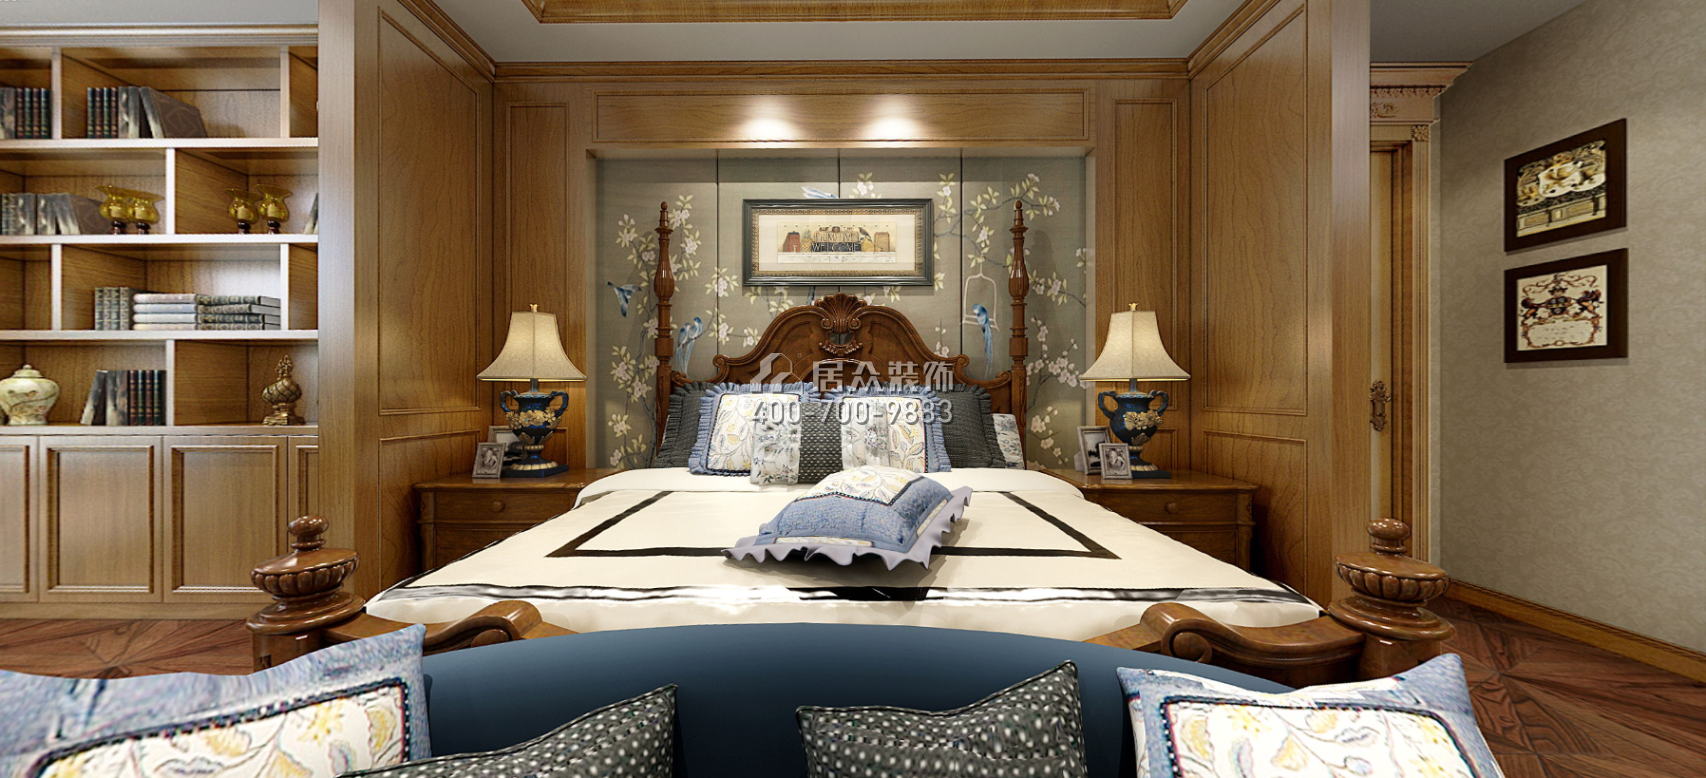 托斯卡納320平方米美式風格別墅戶型臥室裝修效果圖